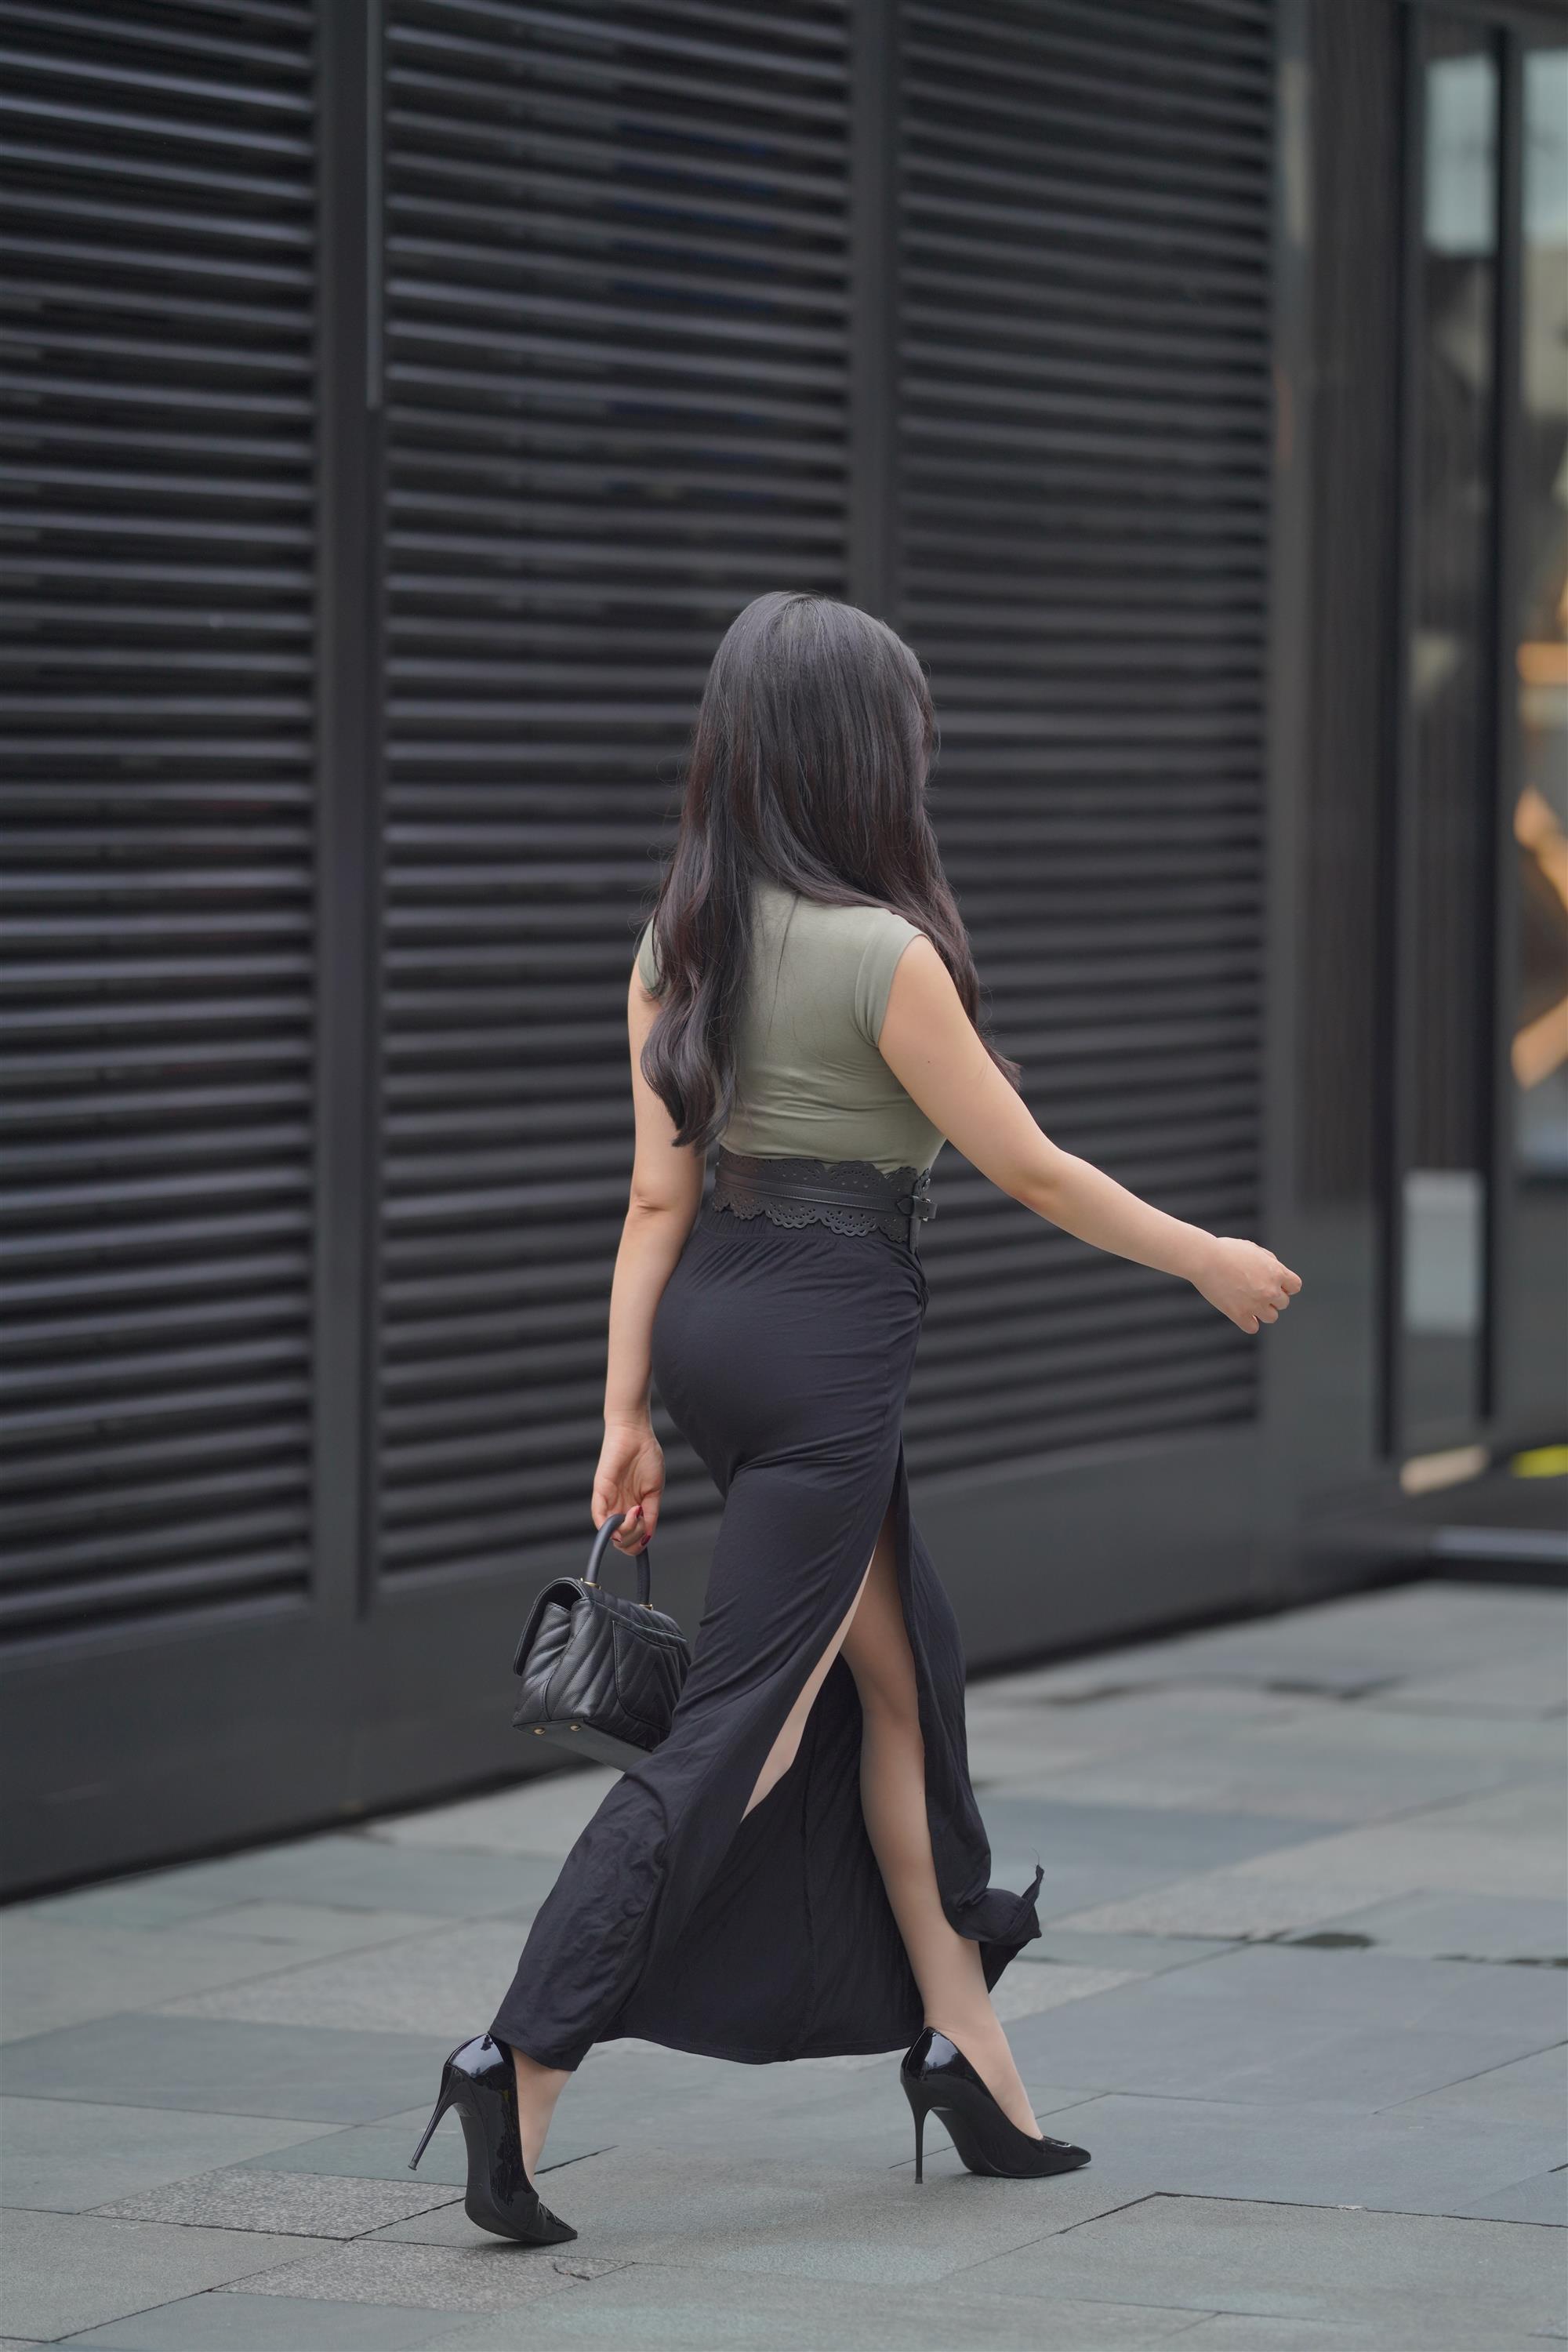 Street 欣儿 Long black skirt - 138.jpg